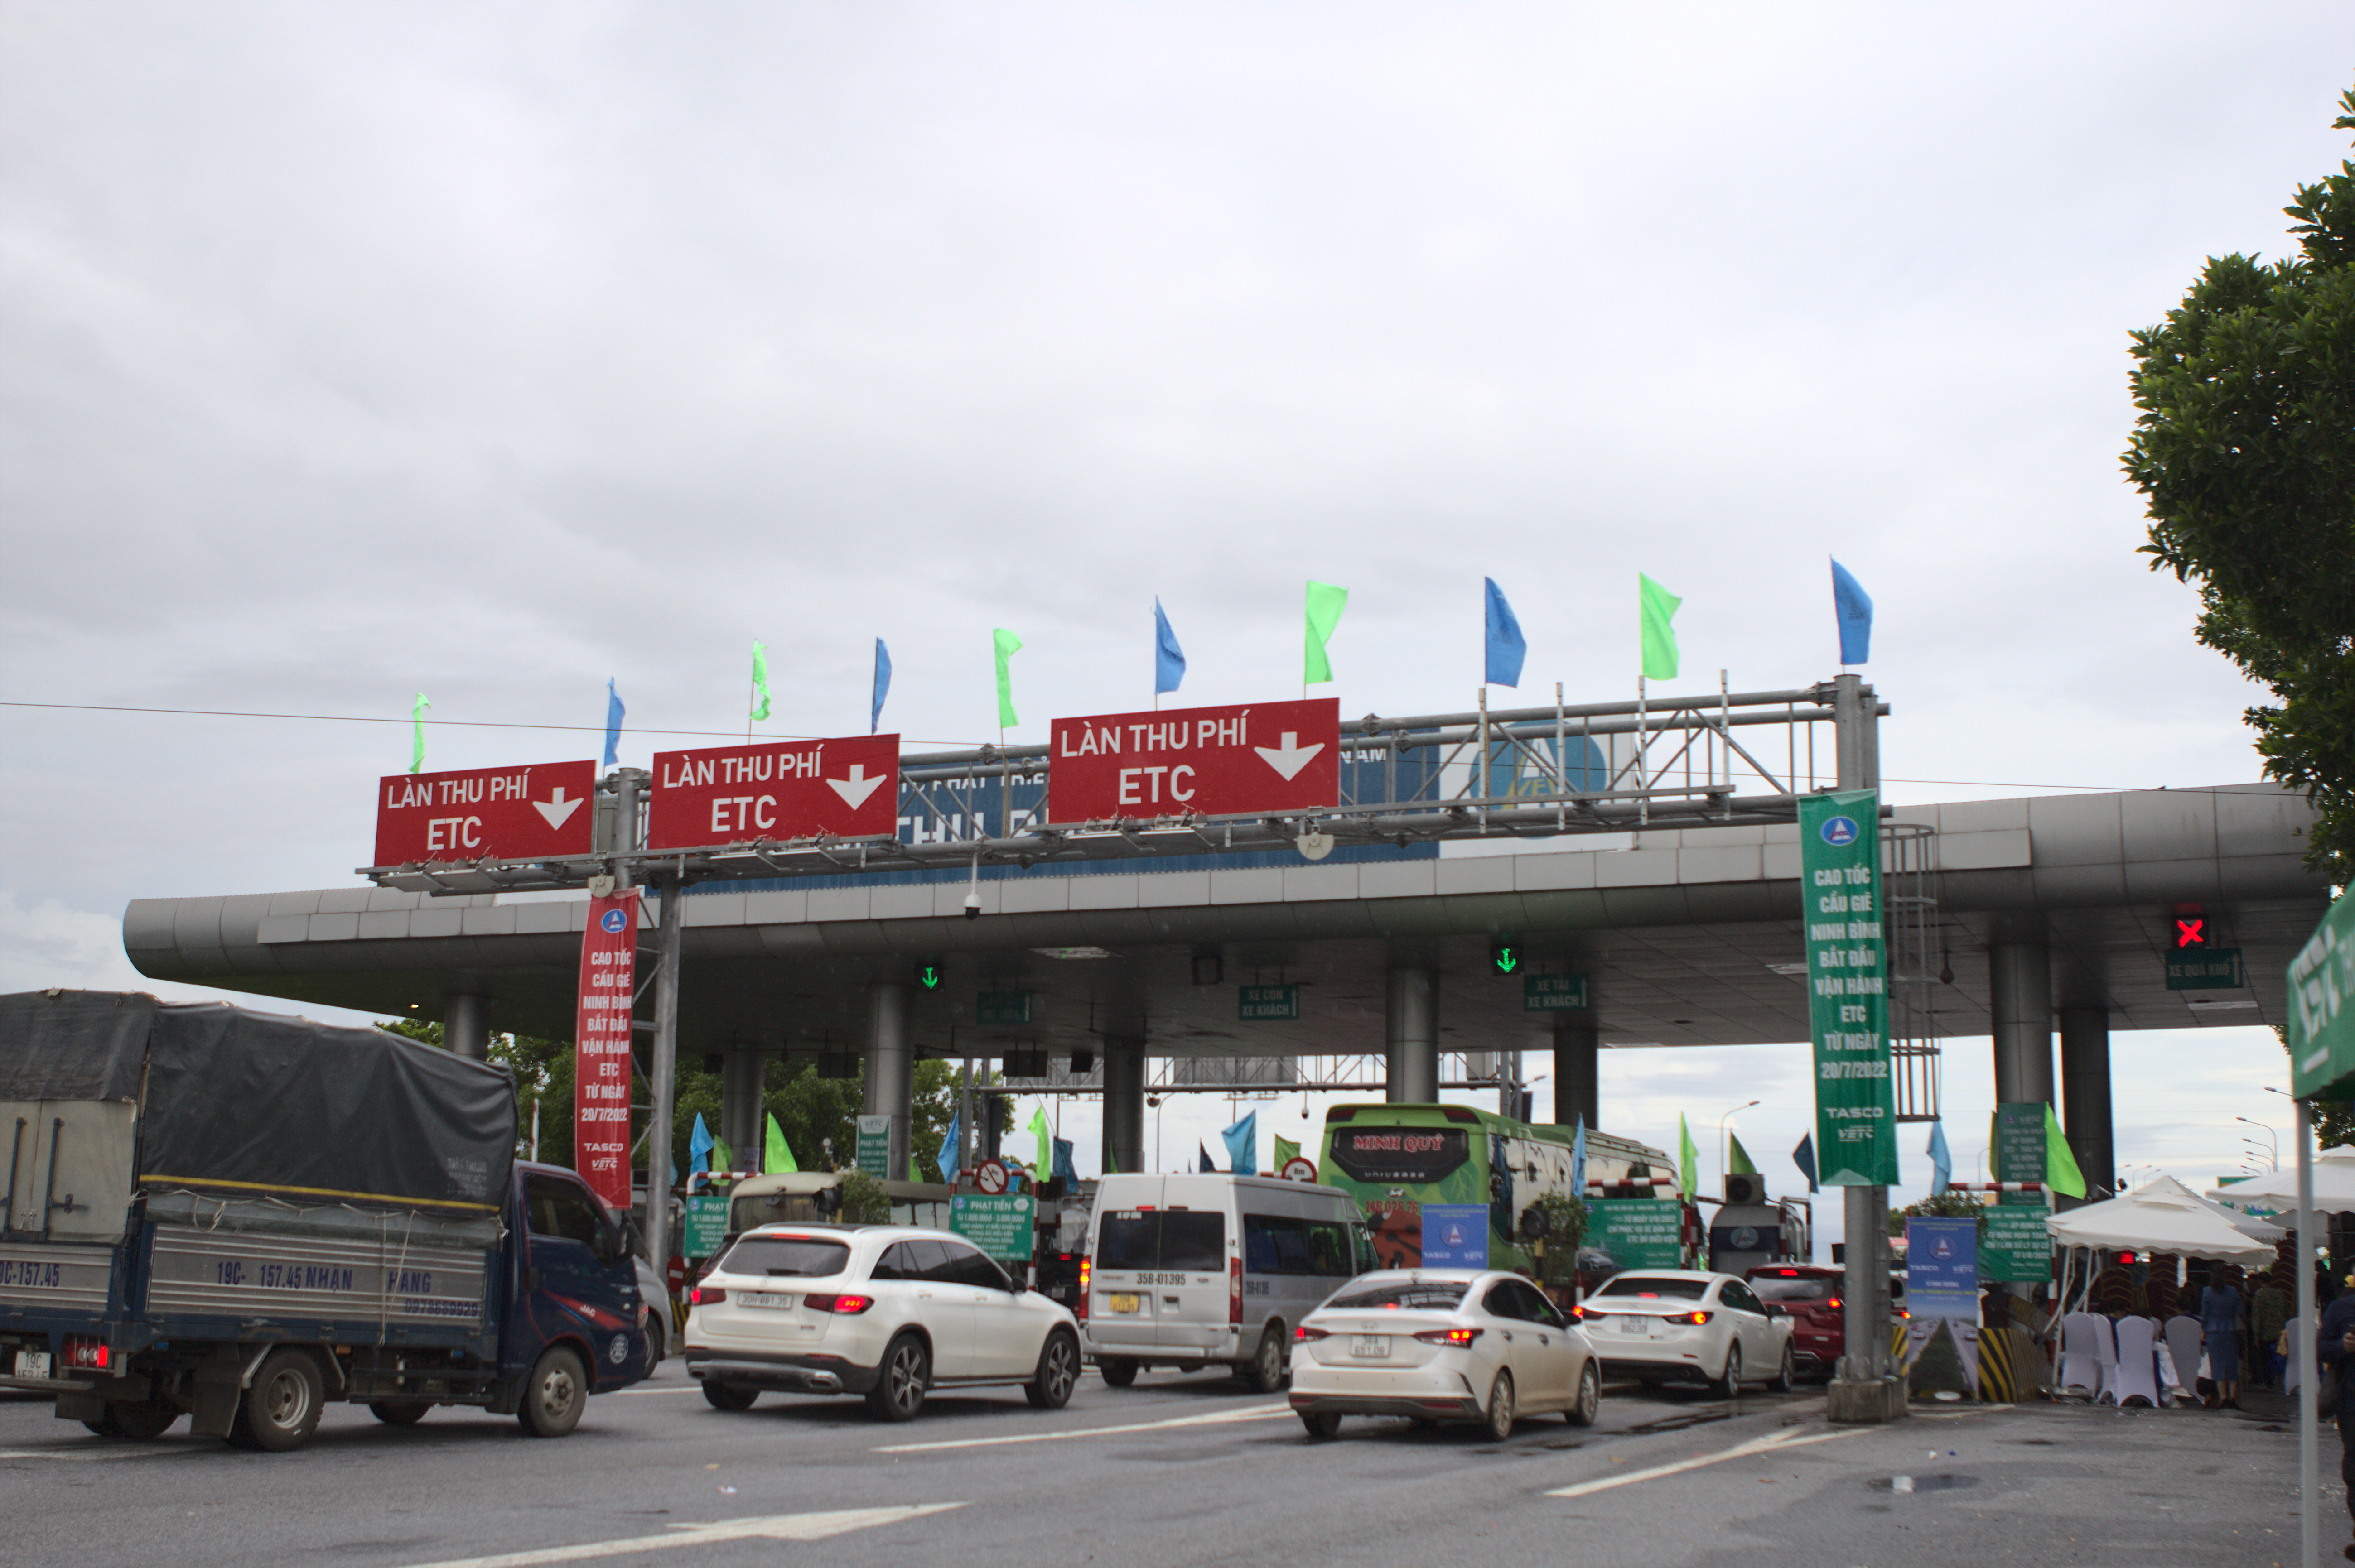 Khai trương Thu phí không dừng ETC tuyến cao tốc Cầu Giẽ - Ninh Bình